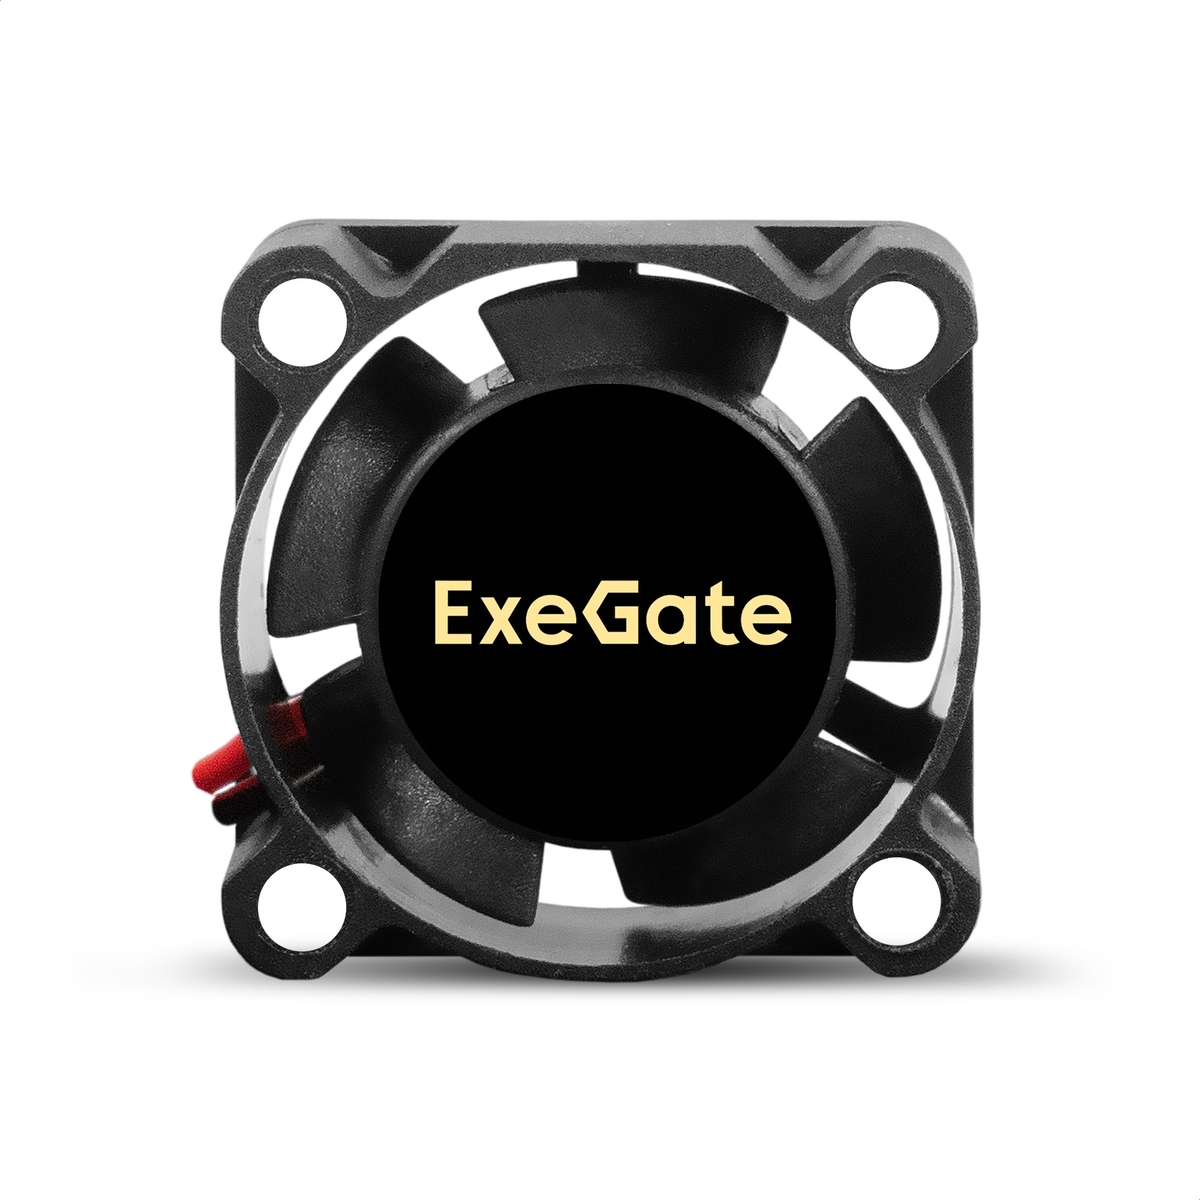  ExeGate EX02510S2P